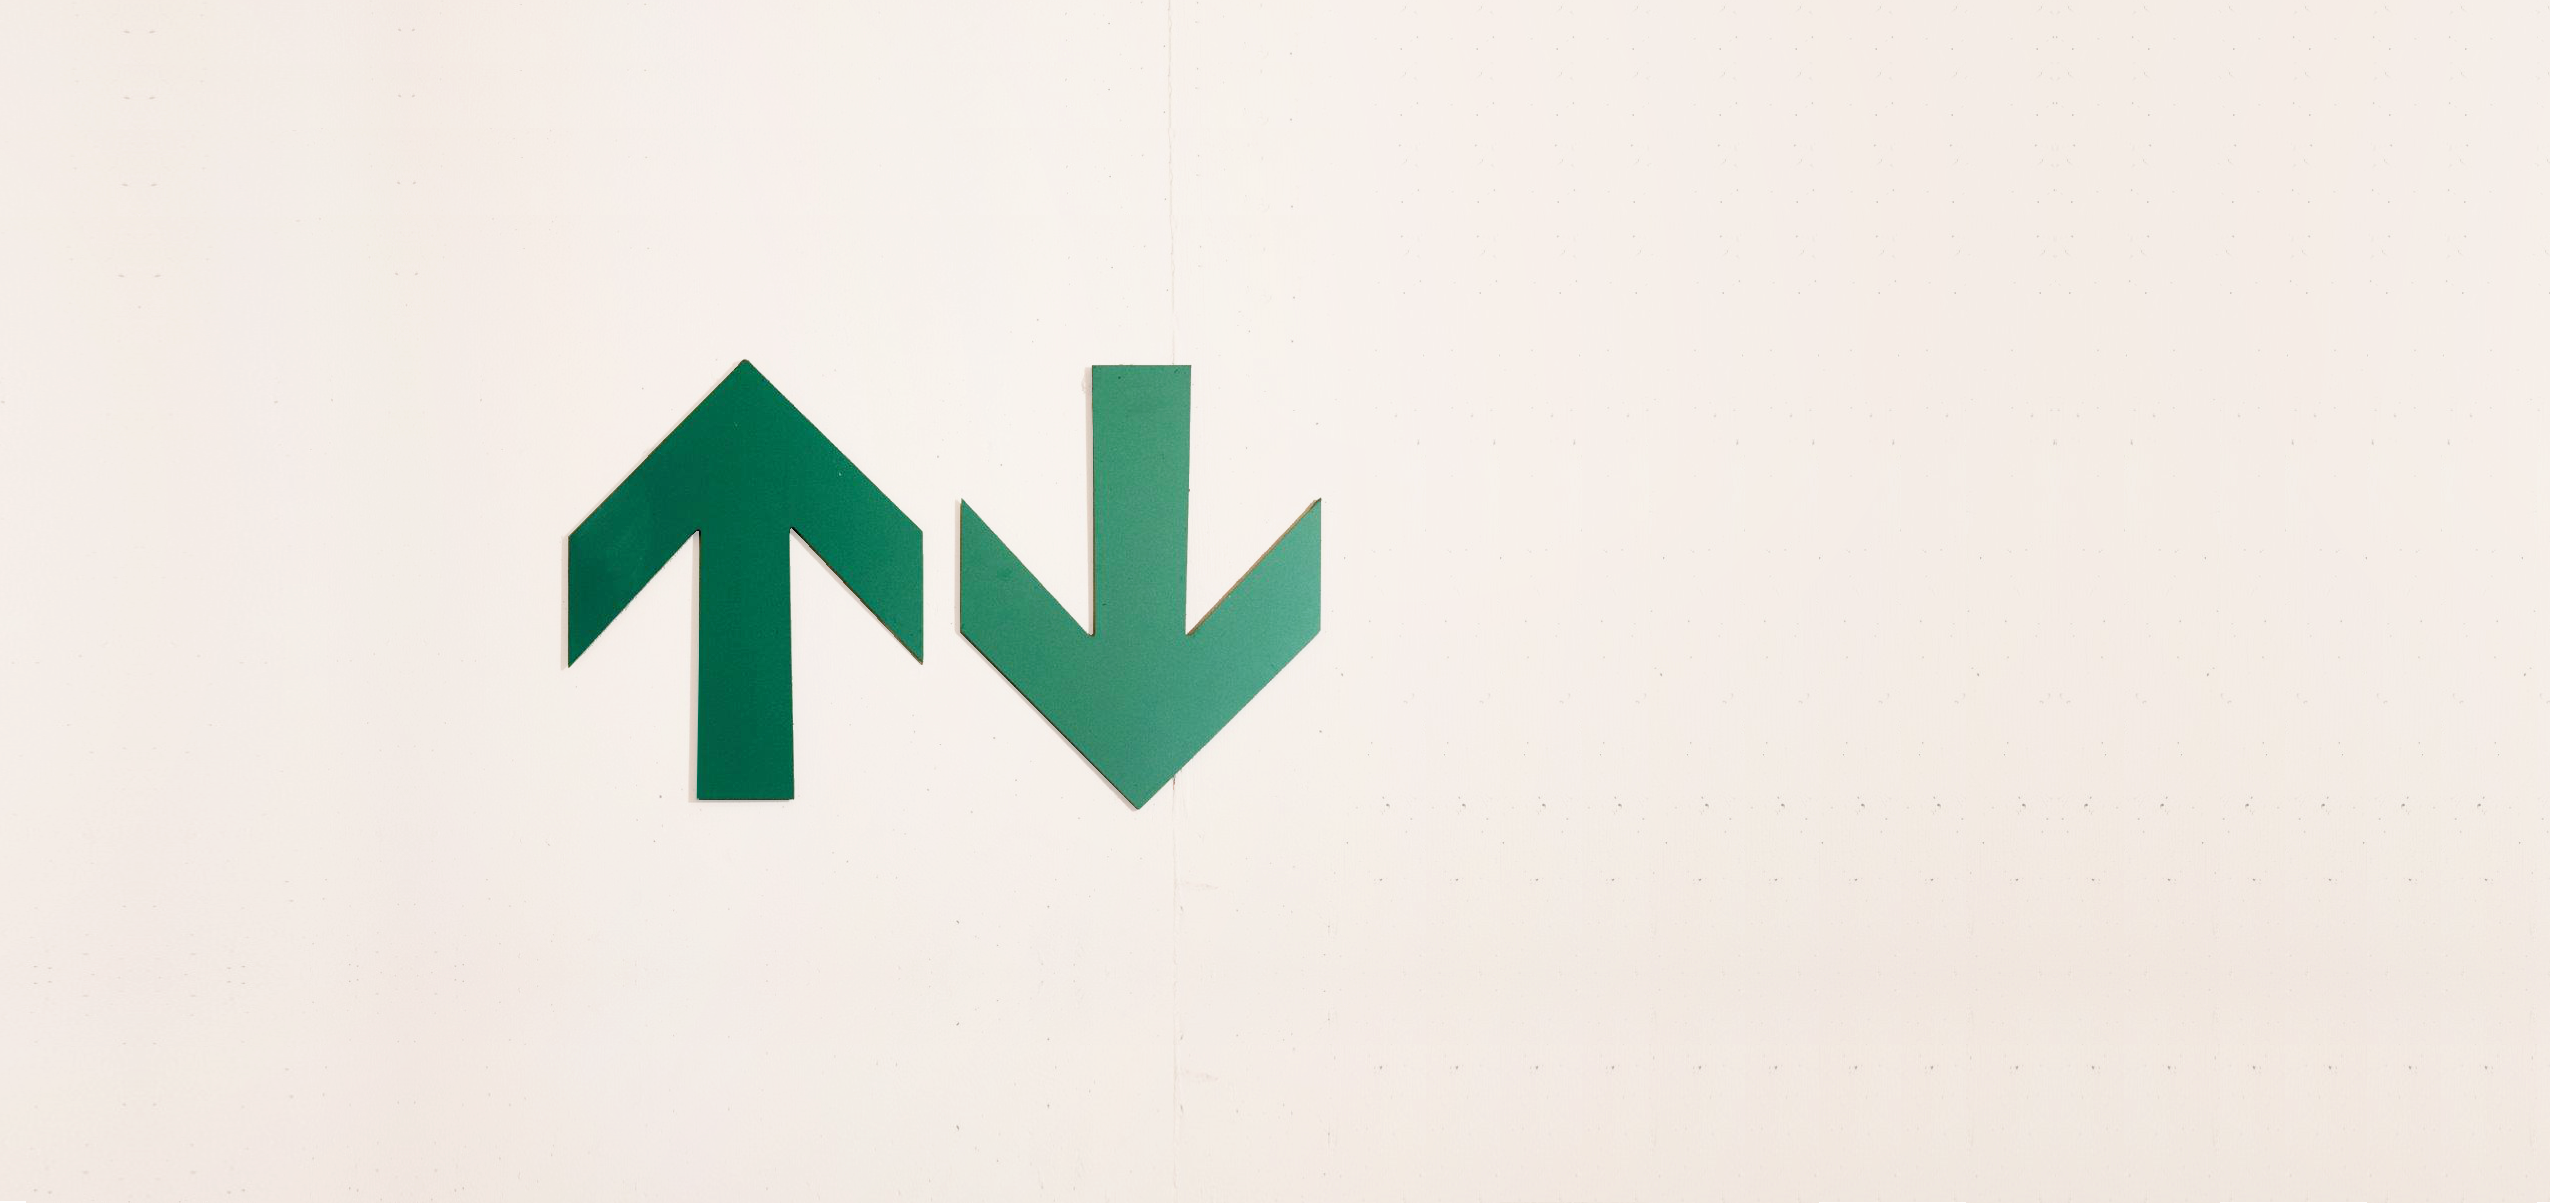 Zwei grüne Pfeile auf einer Betonwand zeigen nach oben bzw. nach unten